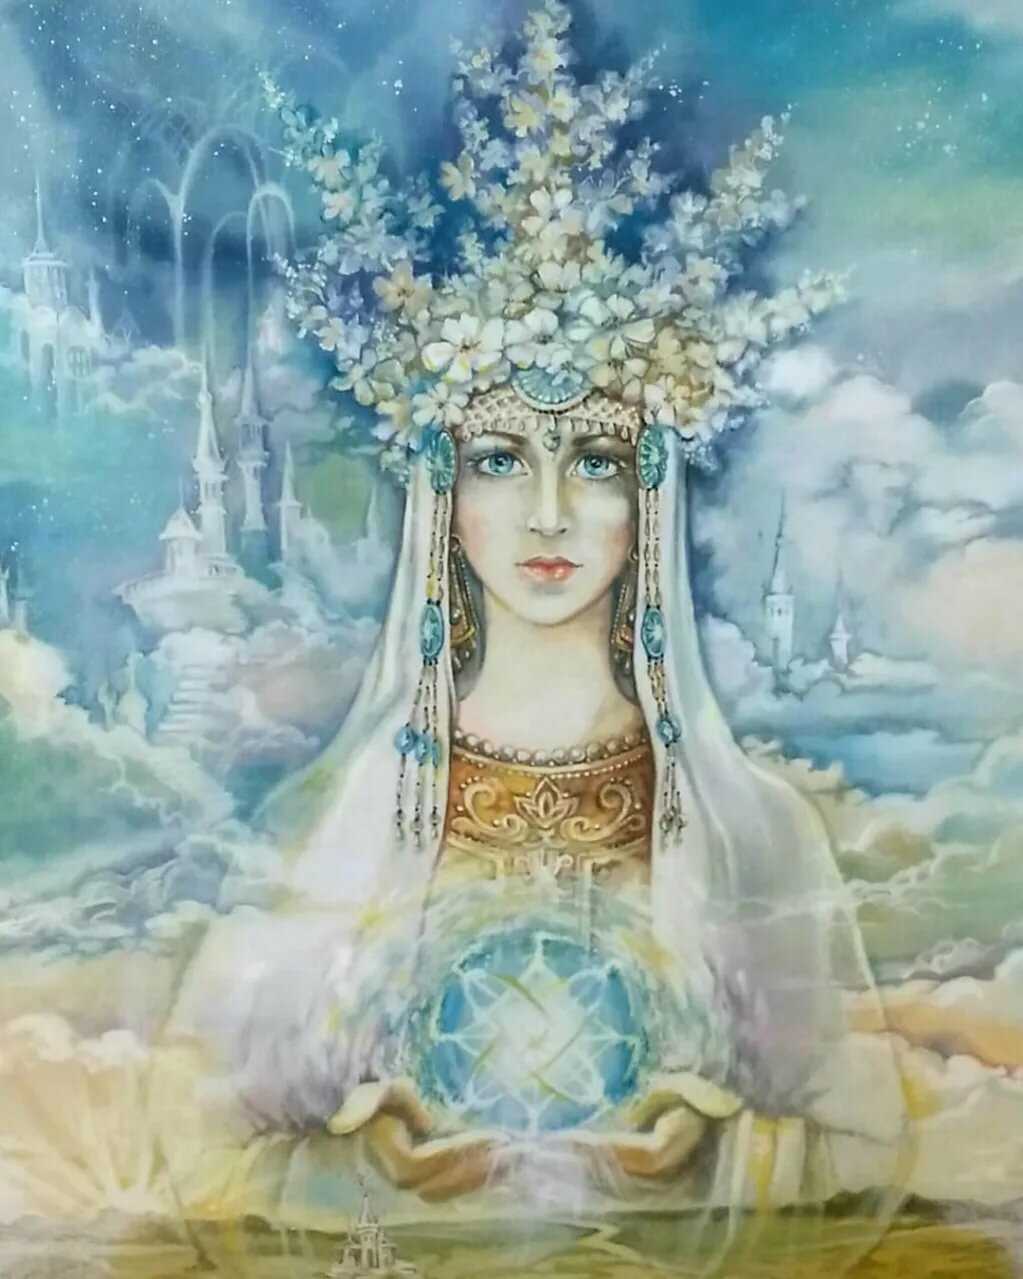 Леля – одна из богинь - рожаниц, трёх помощниц бога Рода, богиня любви и плодородия Богини Леля и Жива возрождают жизнь и способствуют её возвращению обратно в мир Явный из царства Нави